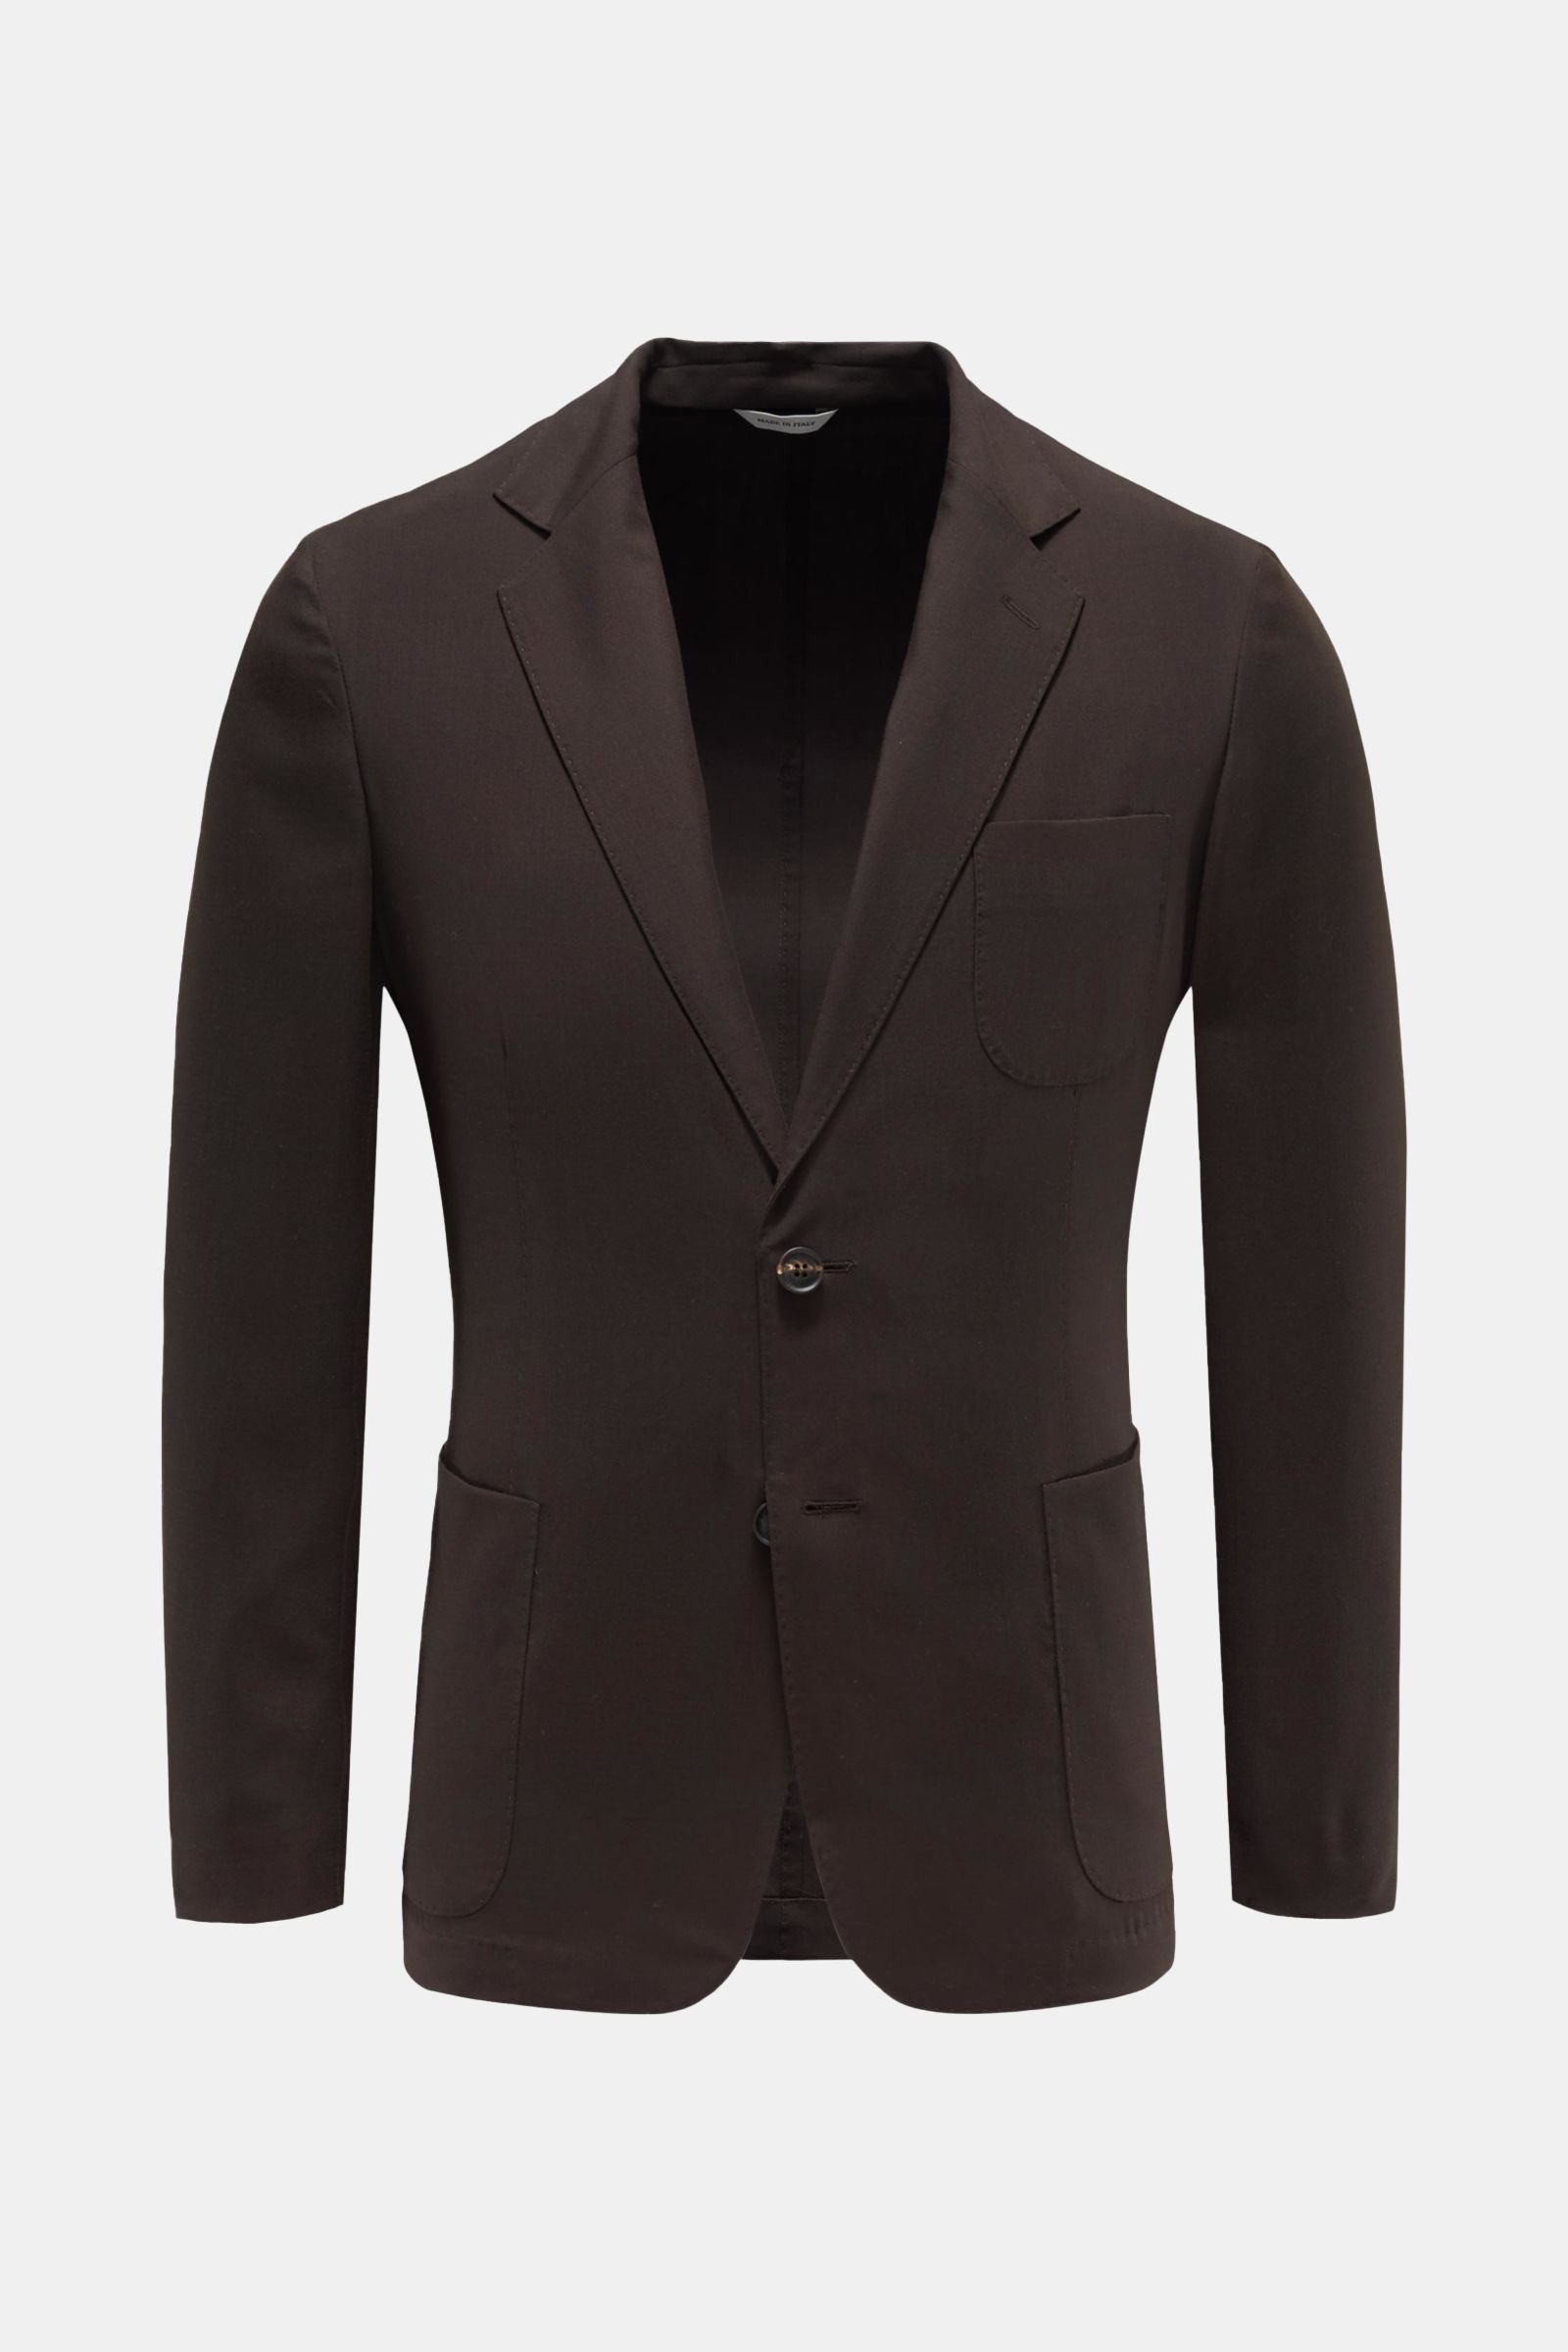 Cashmere jacket dark brown